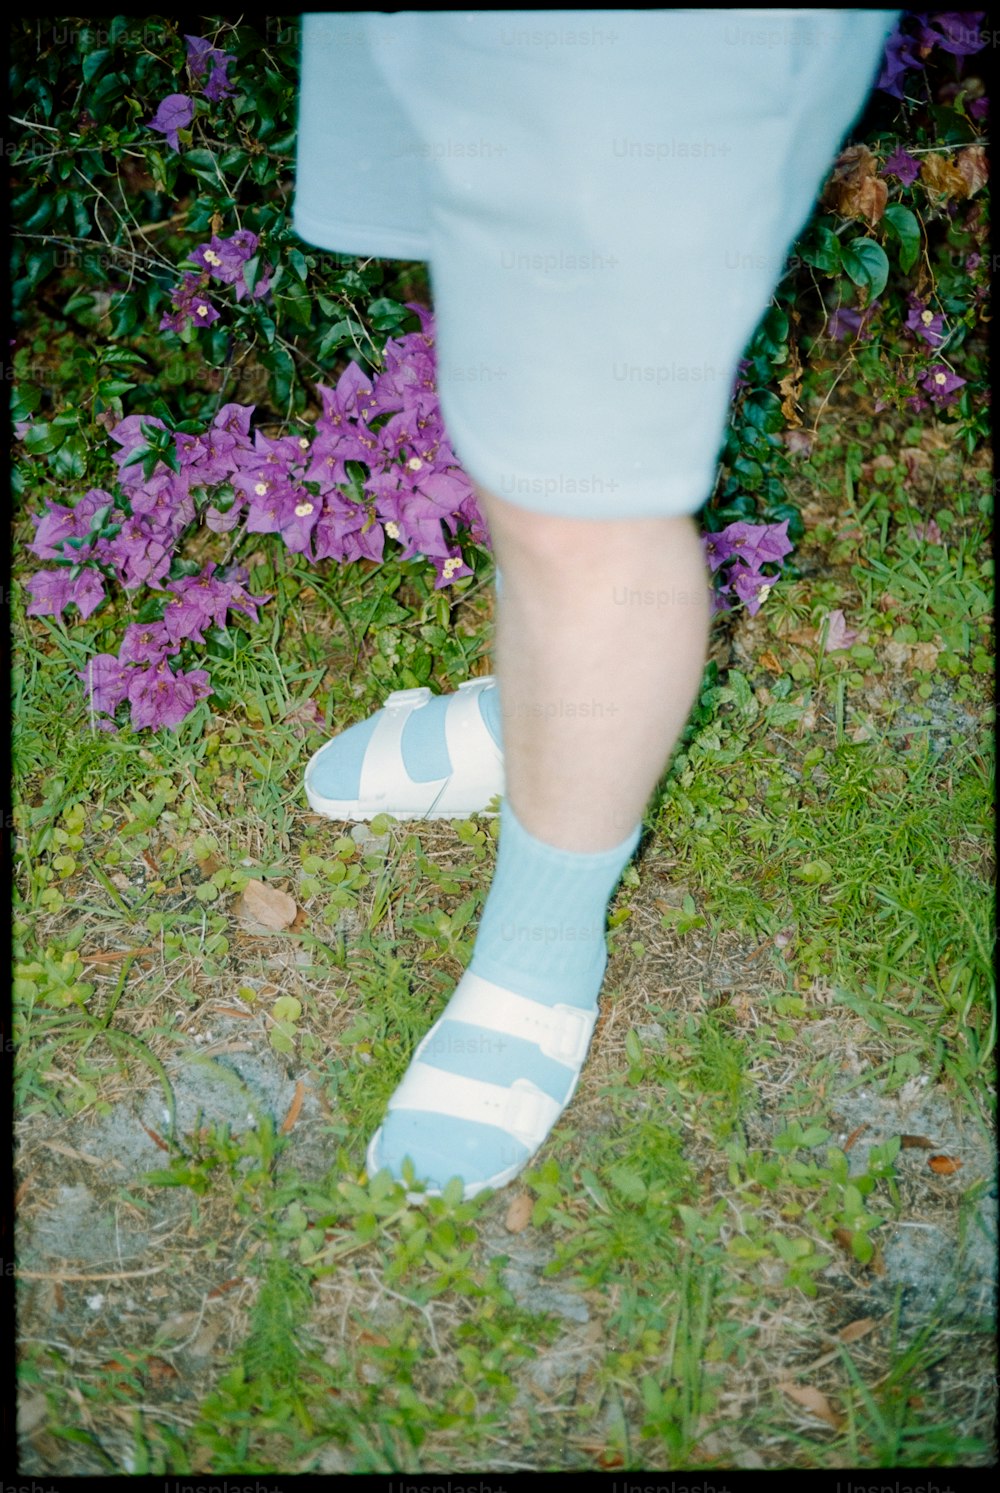 eine Person in blau-weißen Socken, die im Gras steht